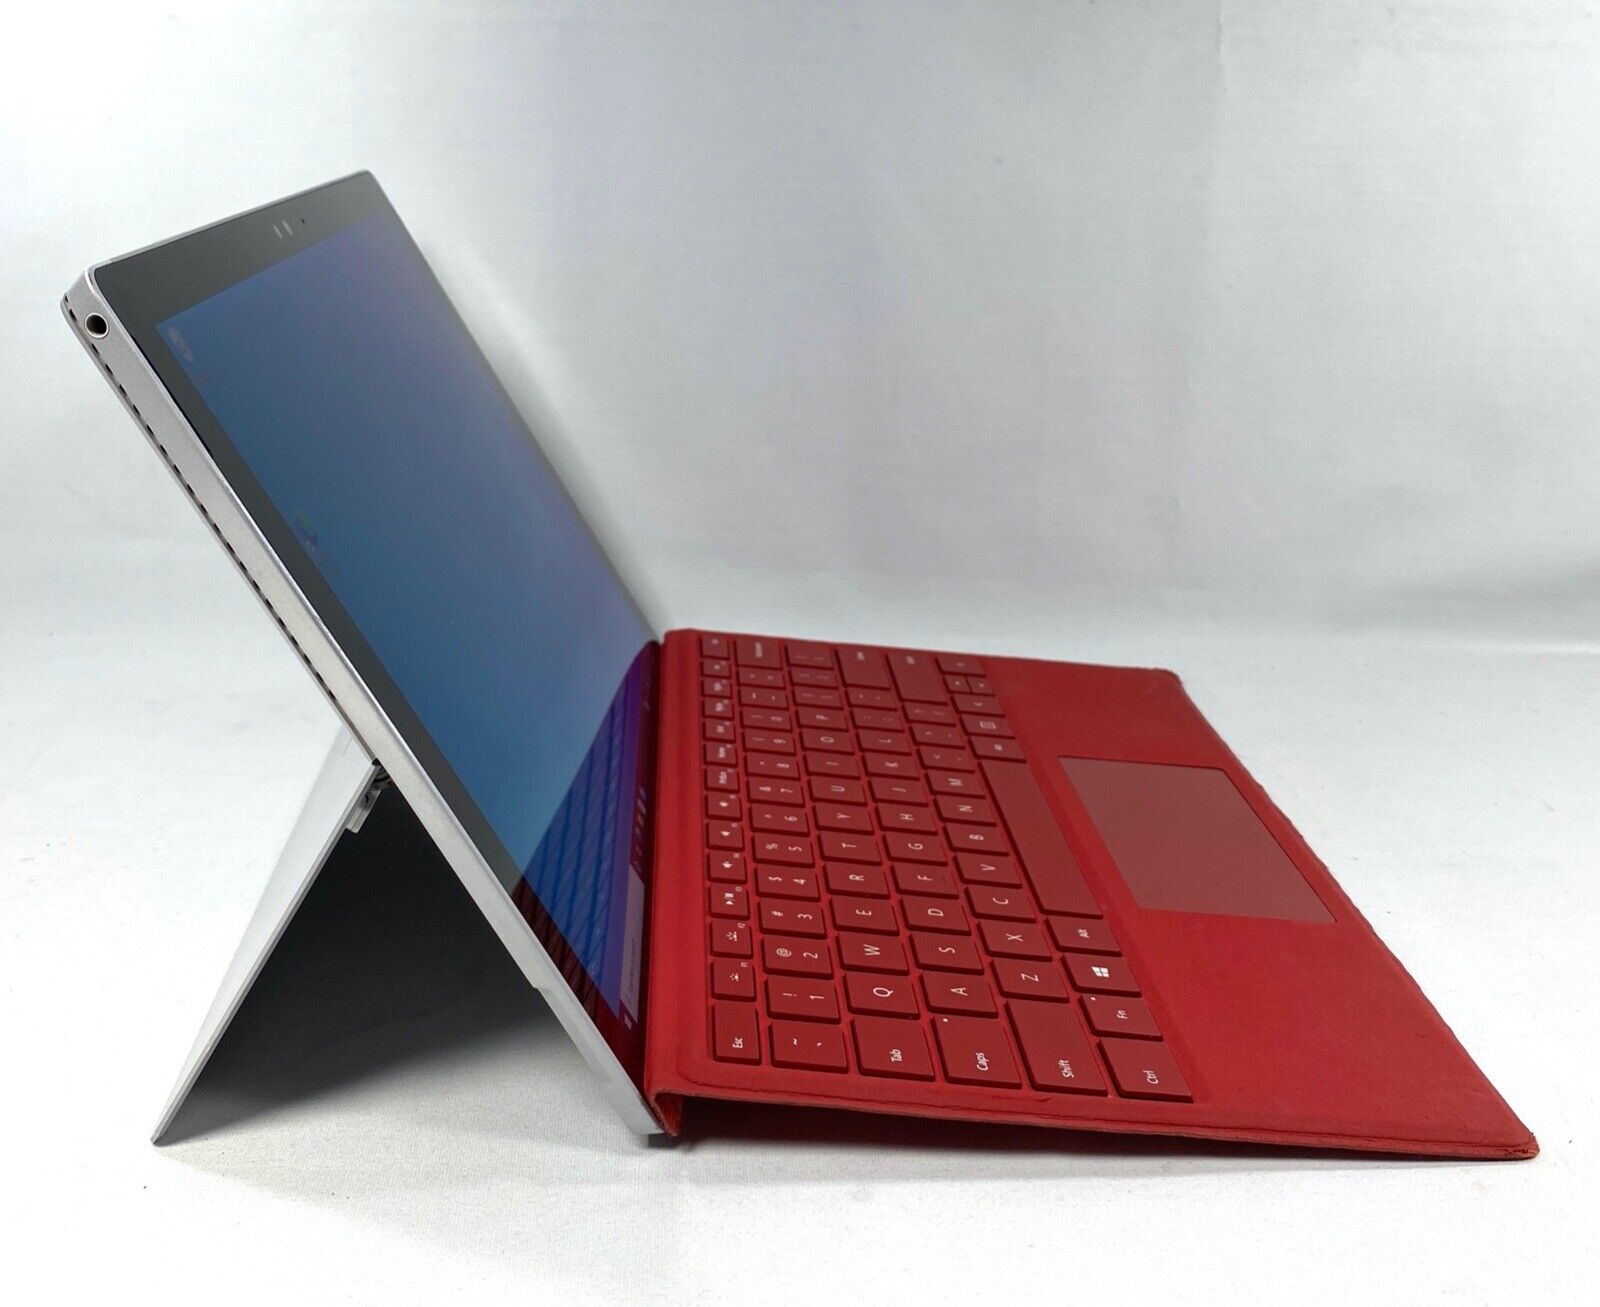 オーディオ機器 ヘッドフォン Microsoft Surface Pro 4 with Red Keyboard 128 GB Intel Core m3-6Y30 1.5 GHz  1724